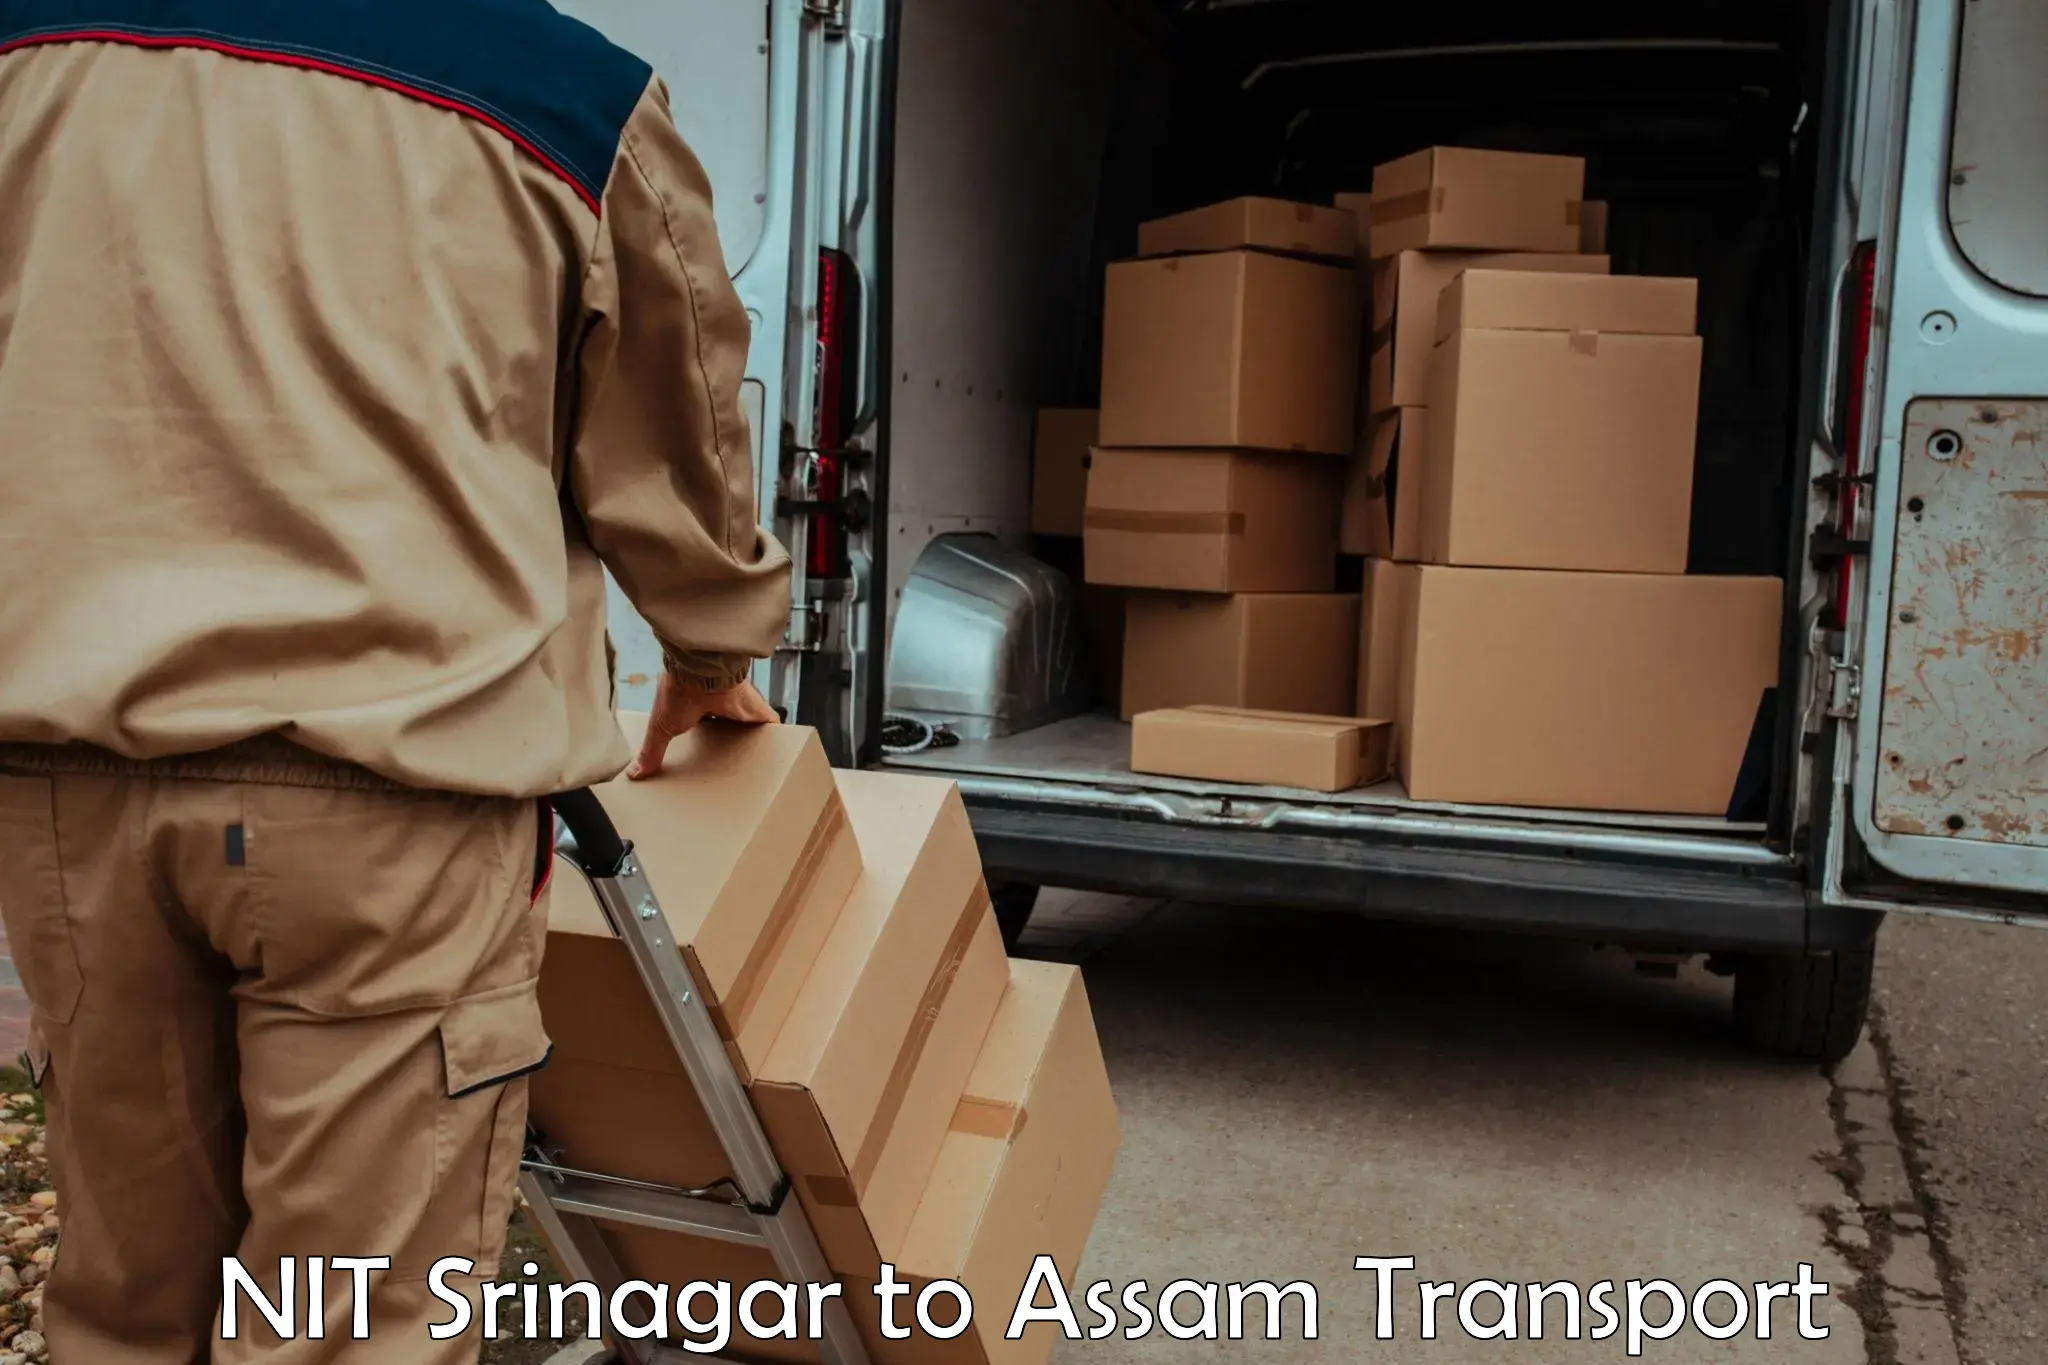 Bike shipping service NIT Srinagar to Kokrajhar